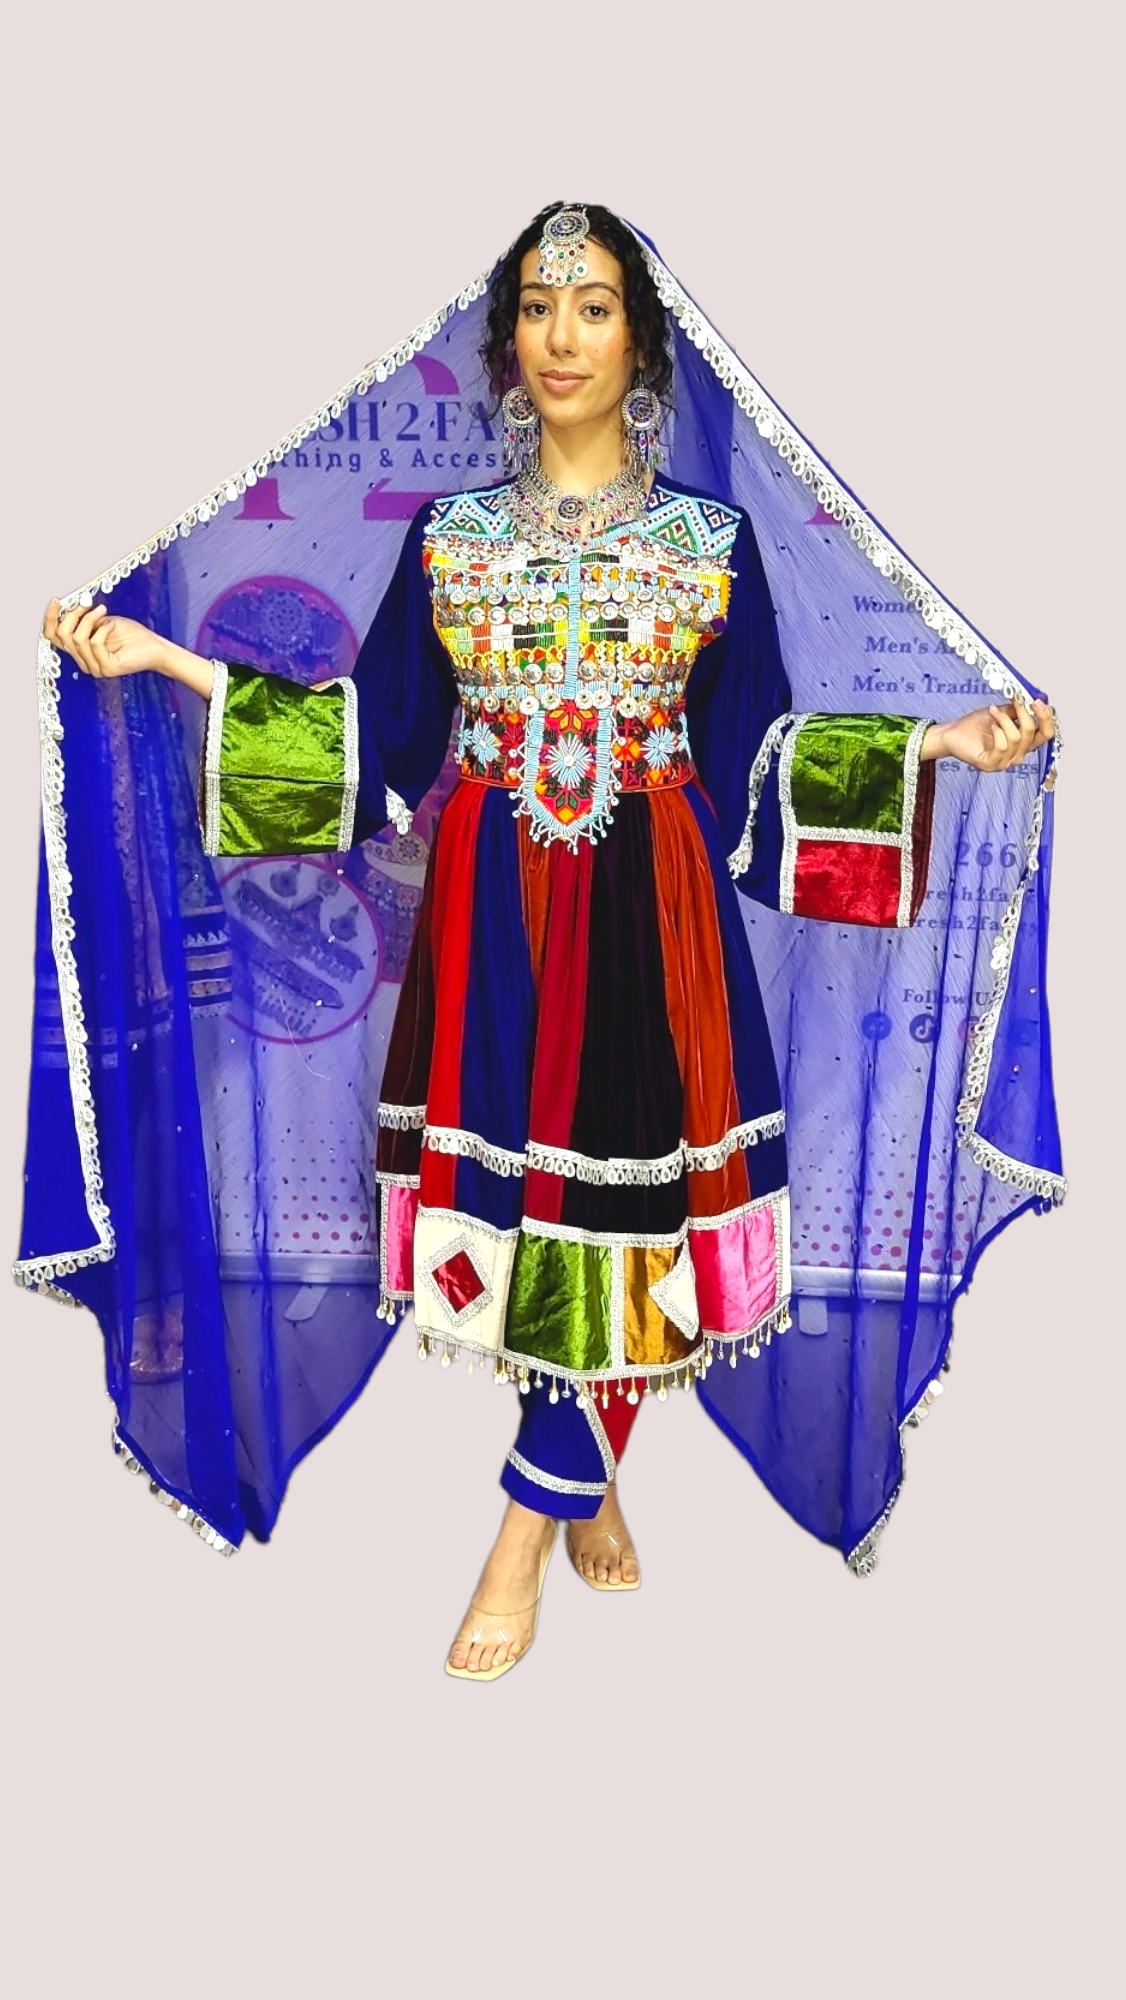 kuchi dress